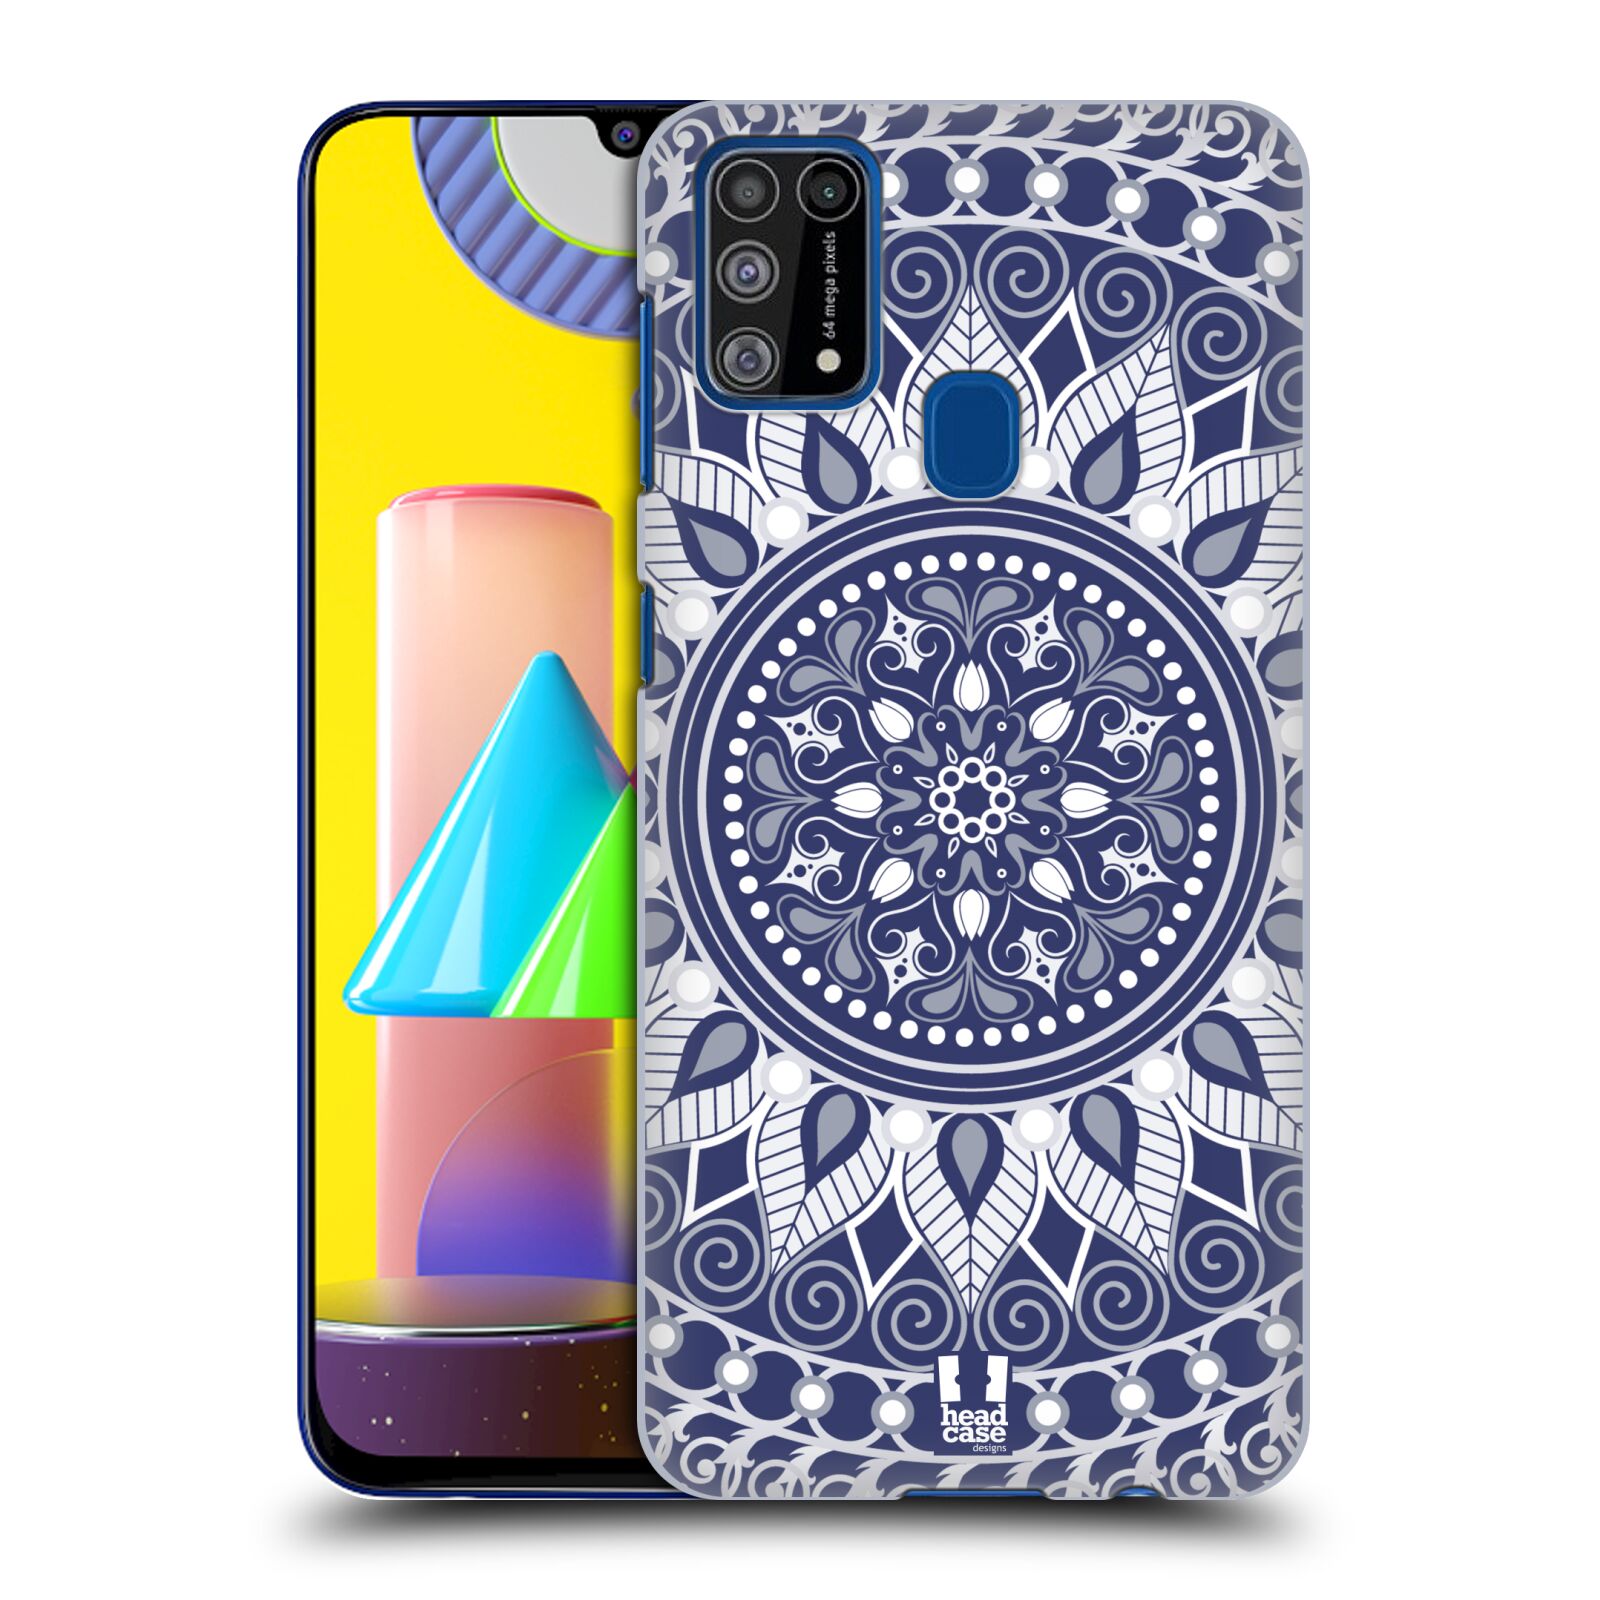 Plastový obal HEAD CASE na mobil Samsung Galaxy M31 vzor Indie Mandala slunce barevný motiv MODRÁ